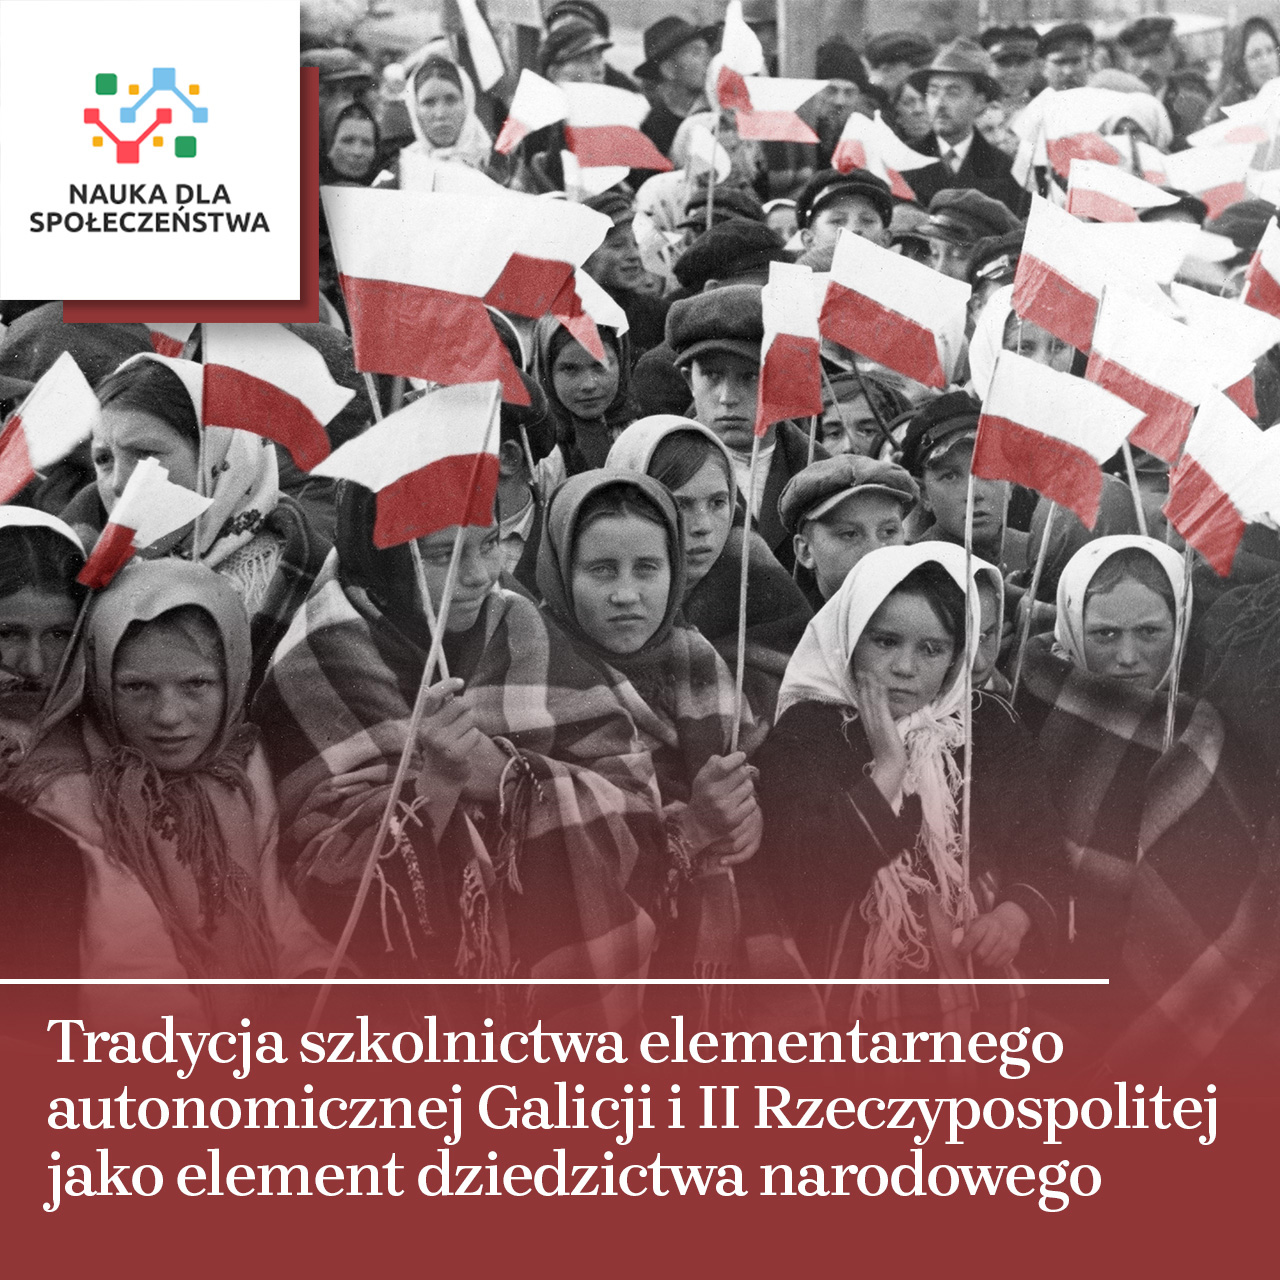 Polska tradycja szkolna jako element dziedzictwa narodowego